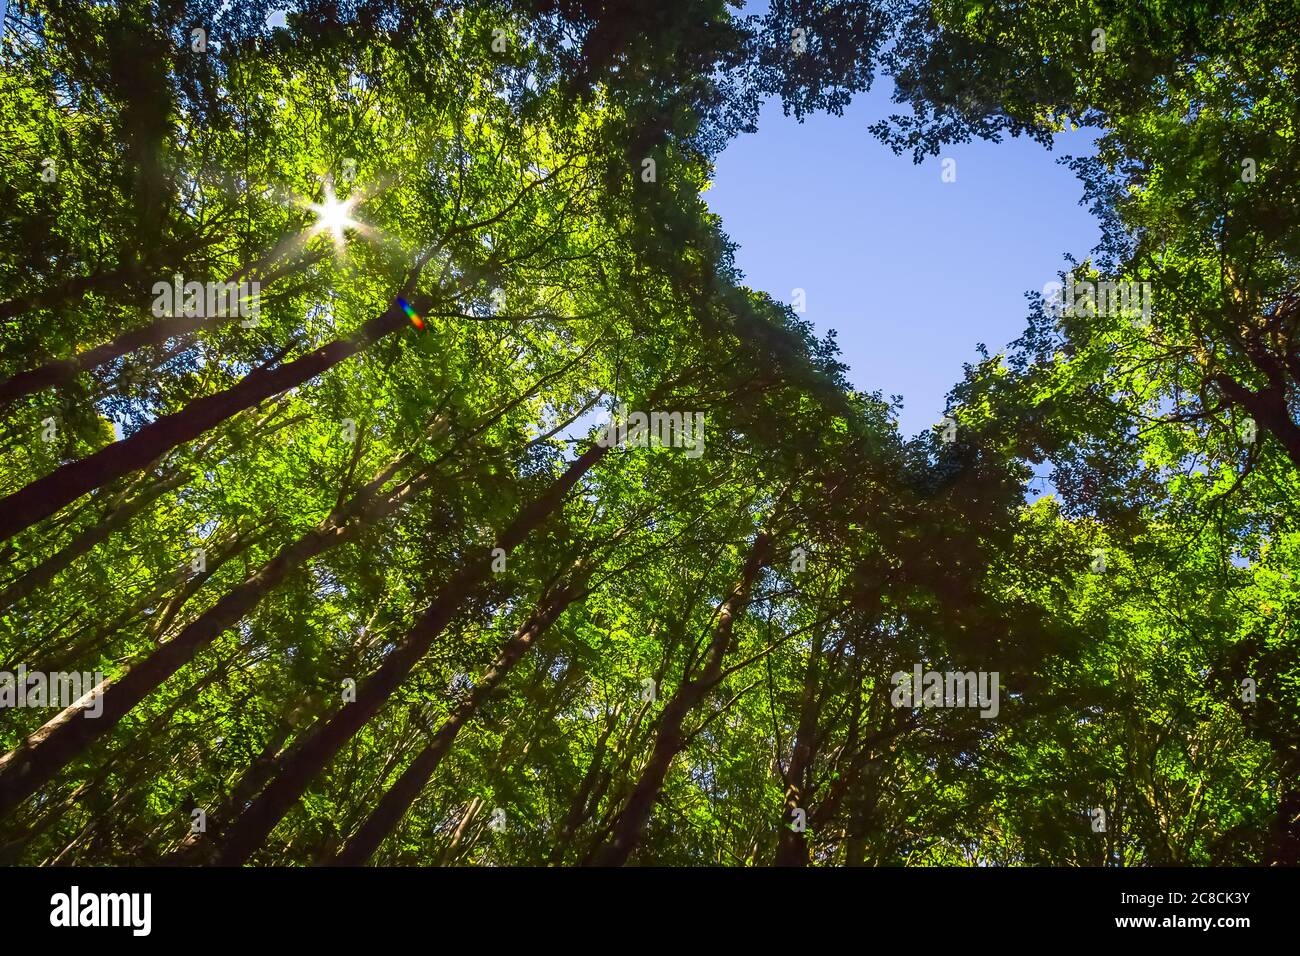 Das Vordach dieses Waldes hat ein Herz-förmiges Loch, das den blauen Himmel zeigt Stockfoto